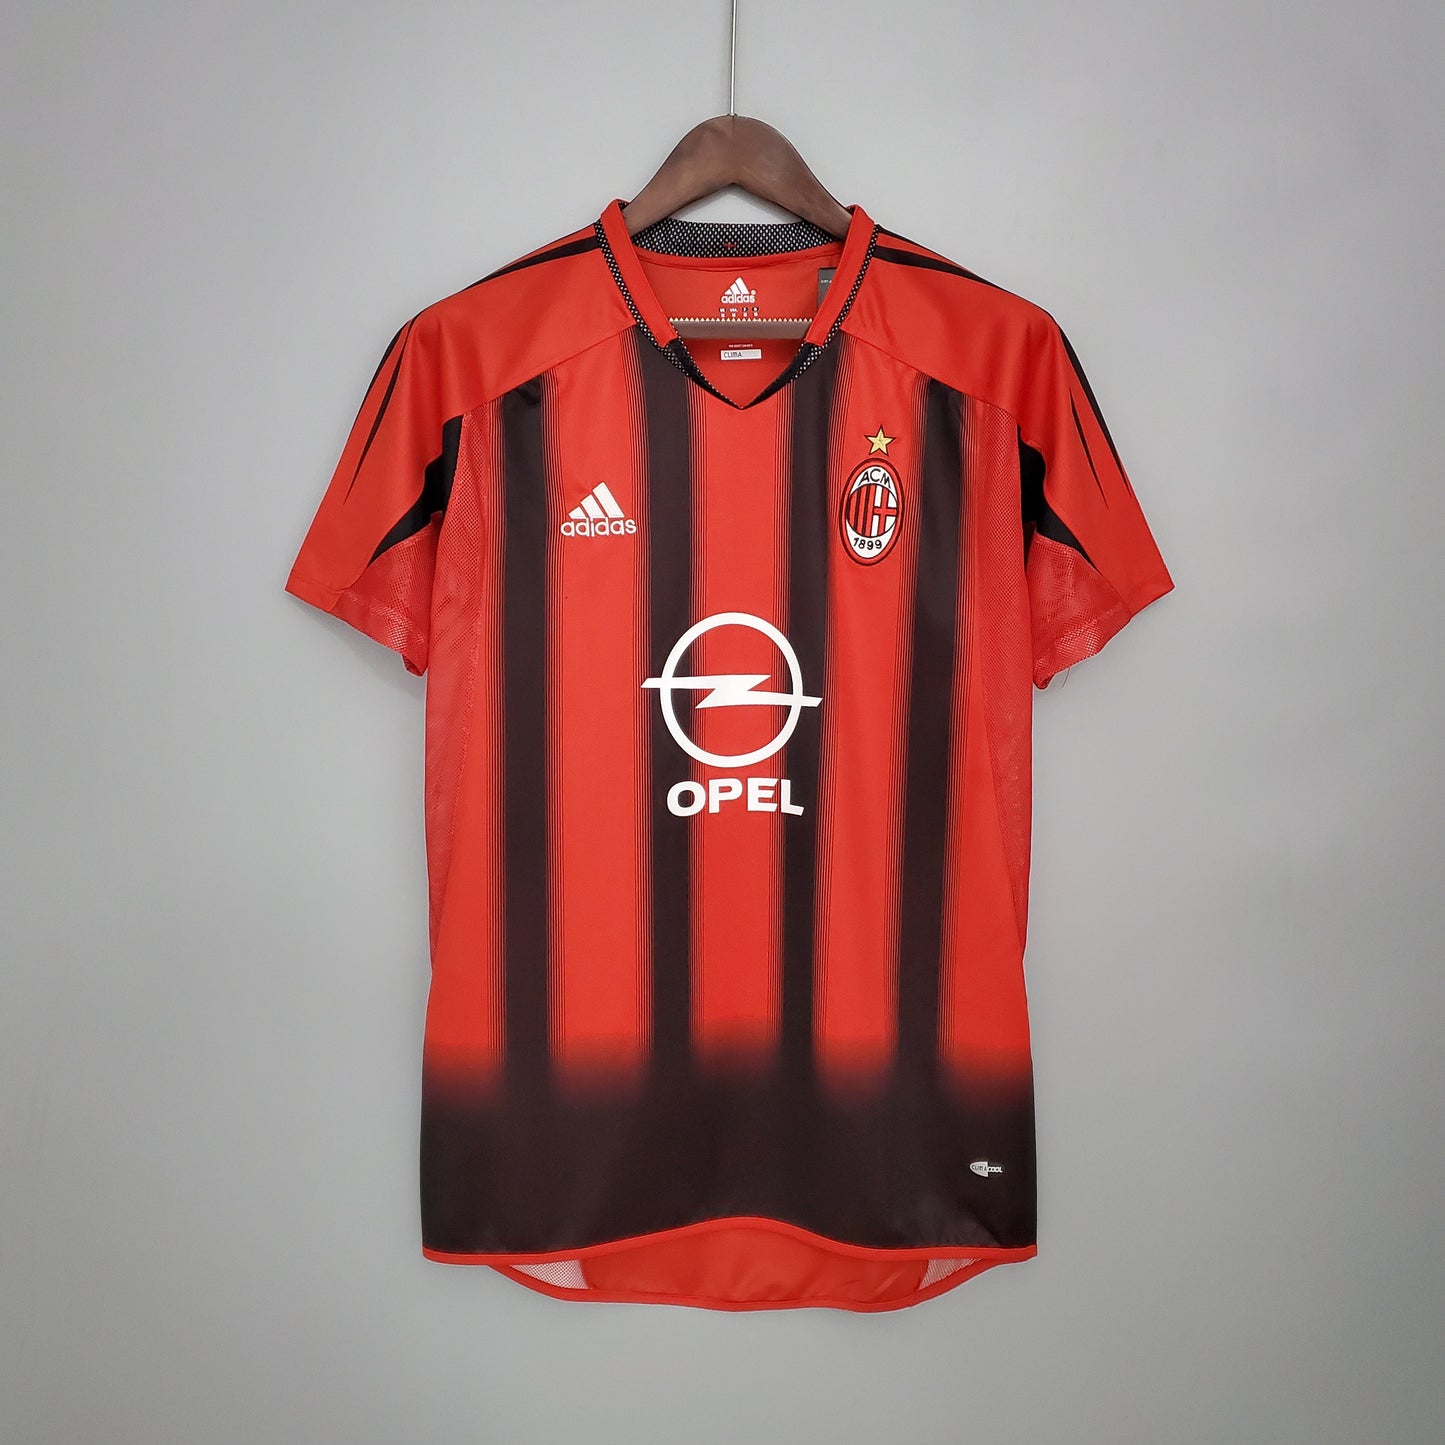 AC Milan Home Kit 04/05